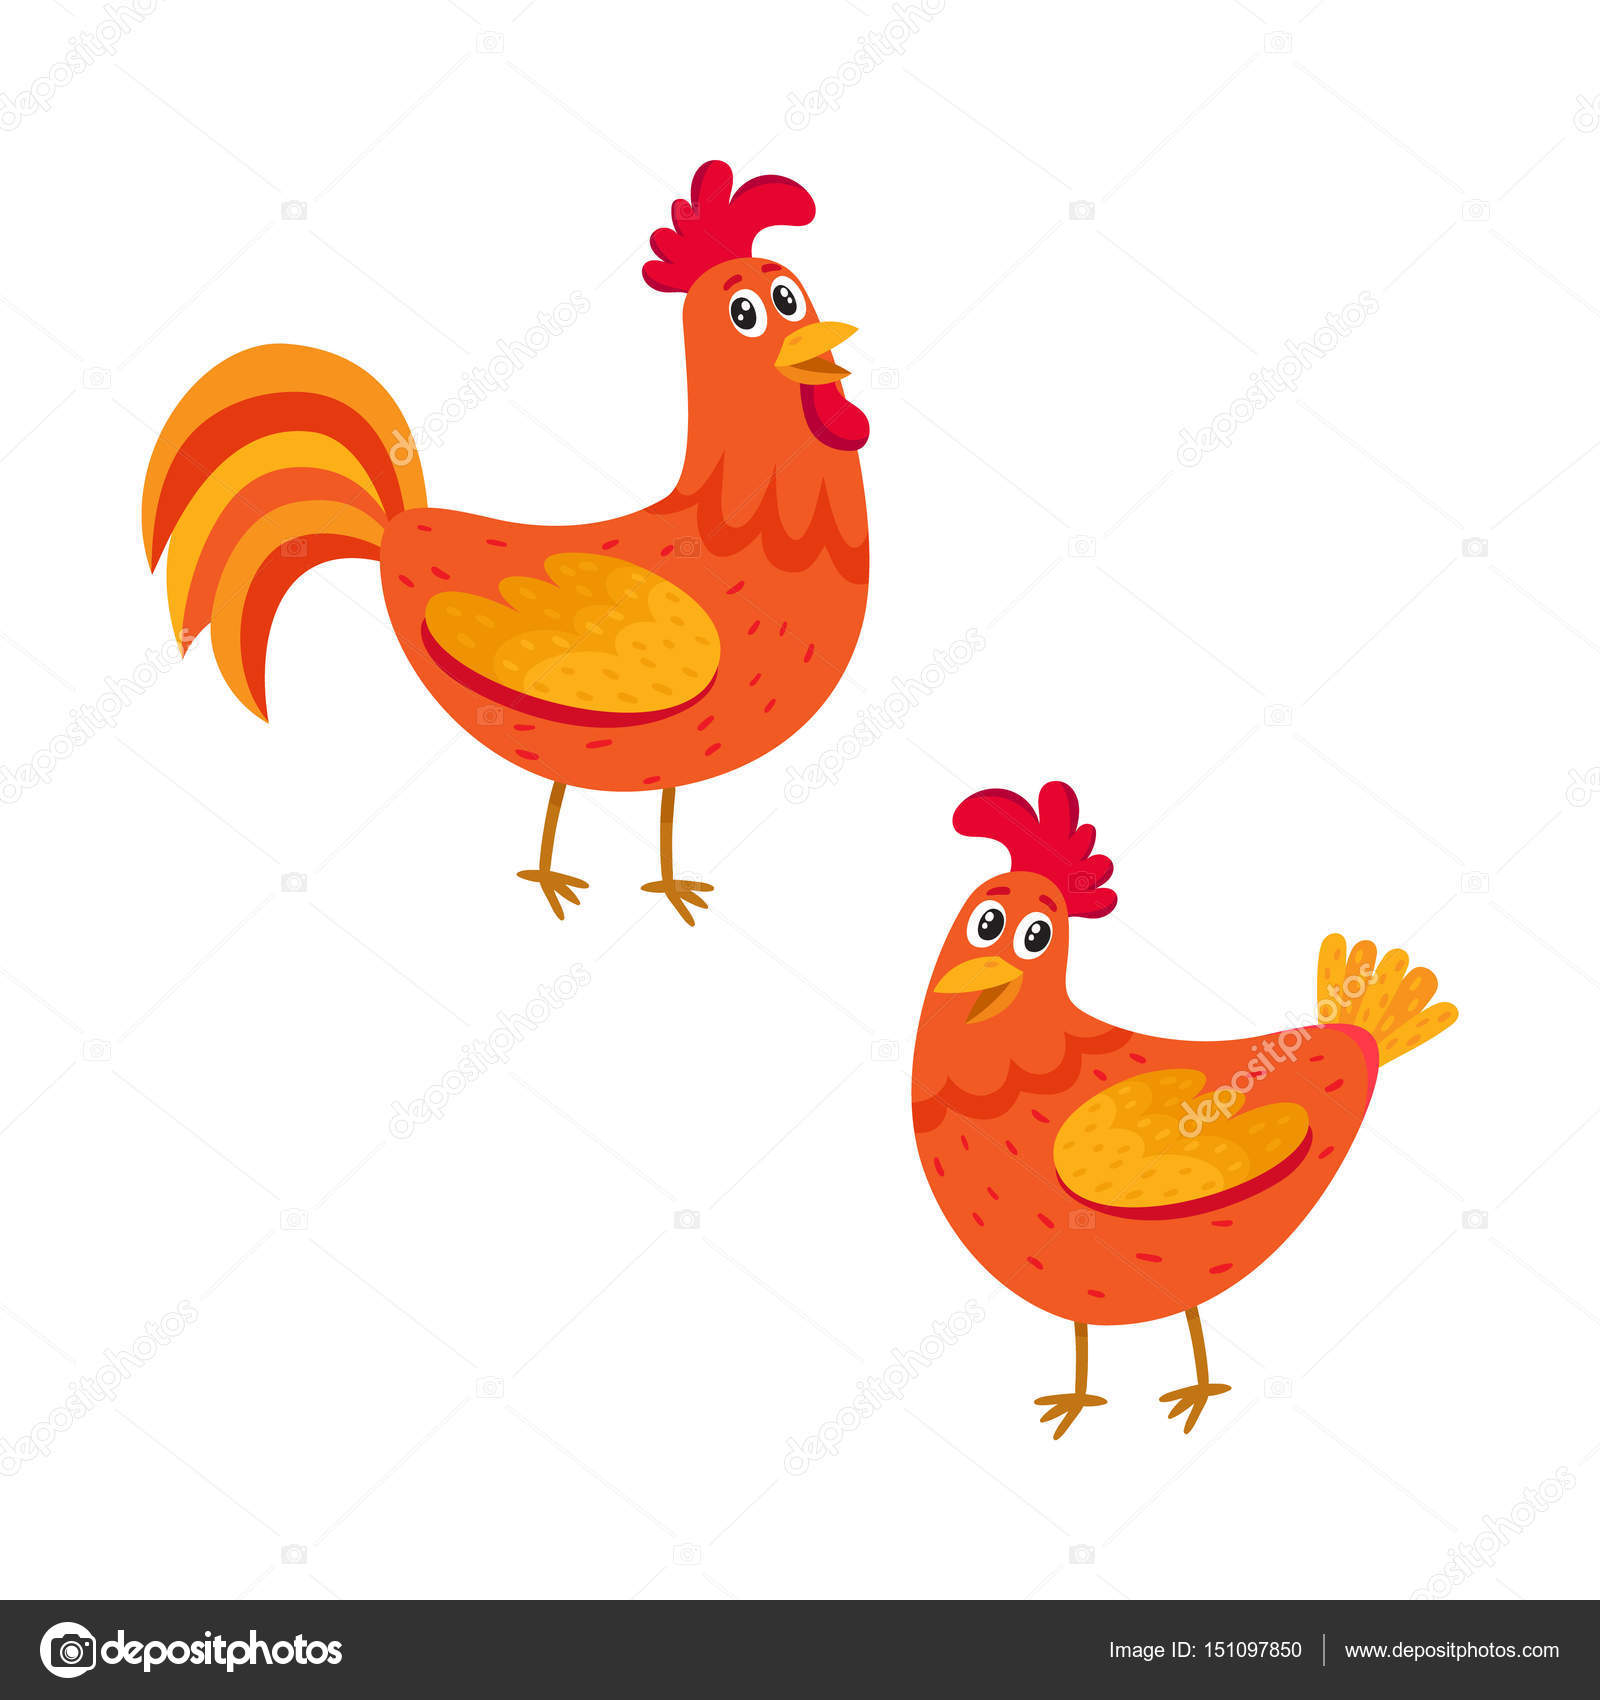 Um desenho animado de uma galinha com rabo vermelho.